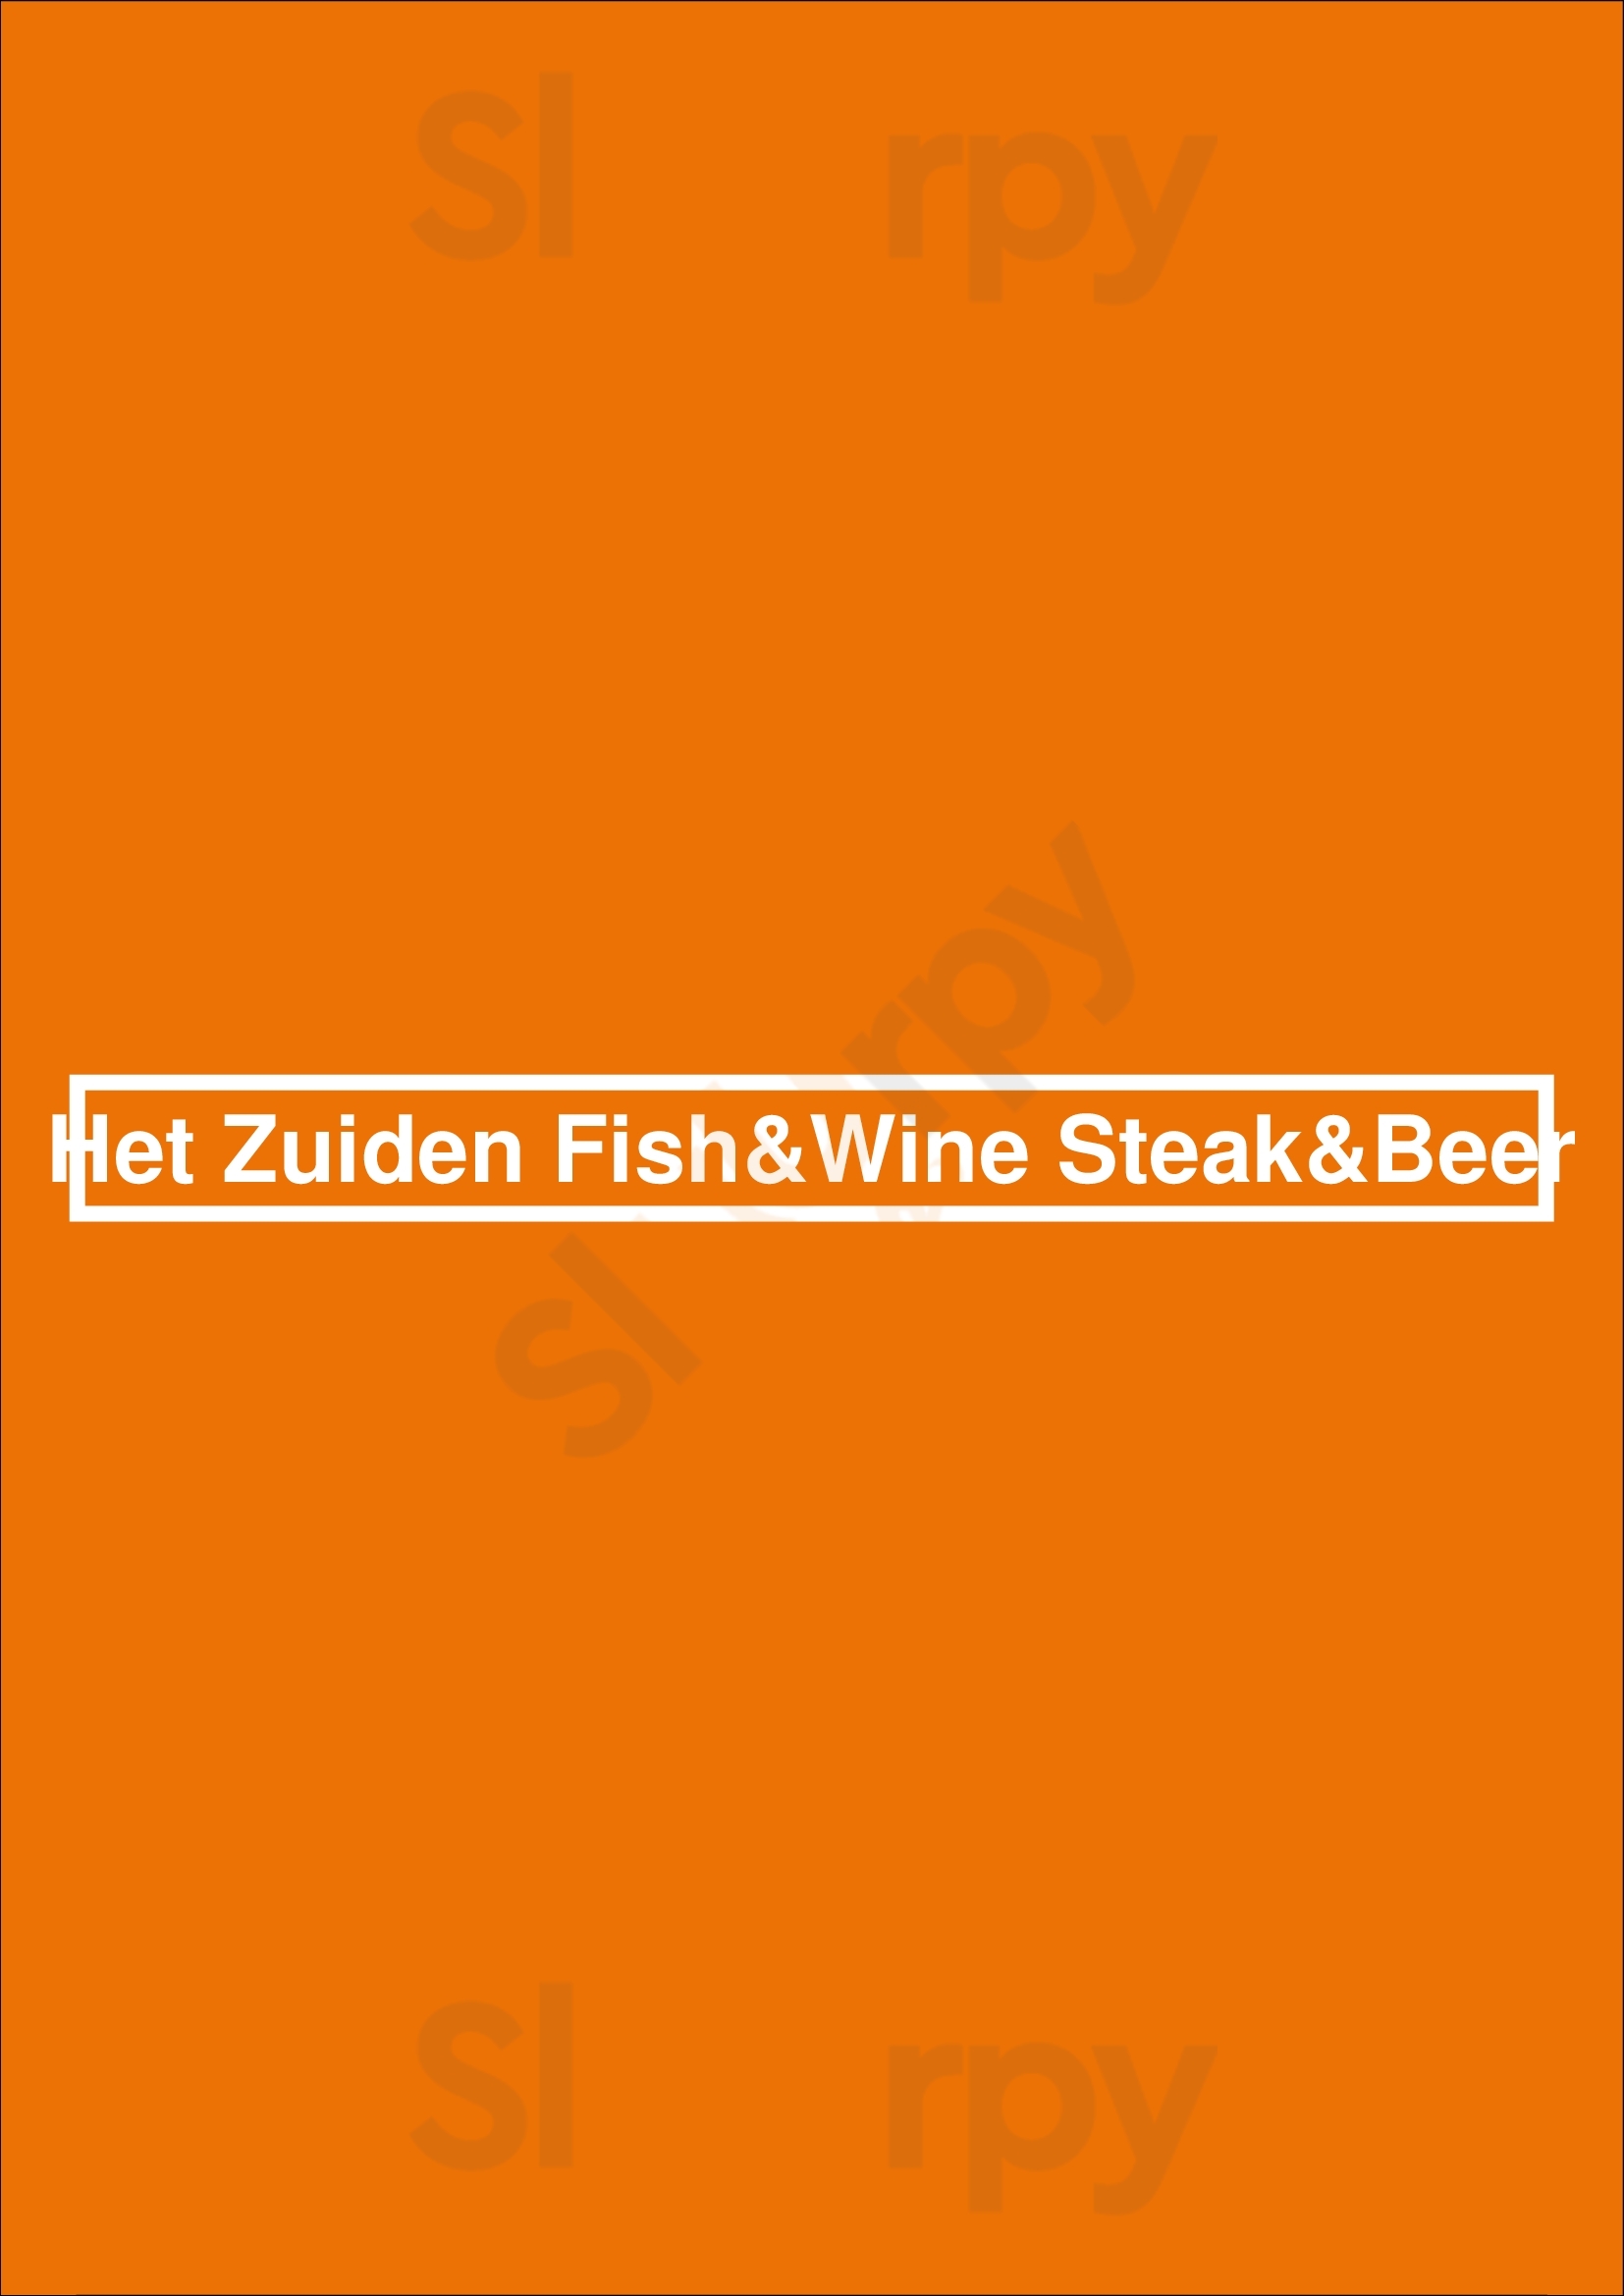 Het Zuiden Fish&wine Steak&beer Utrecht Menu - 1